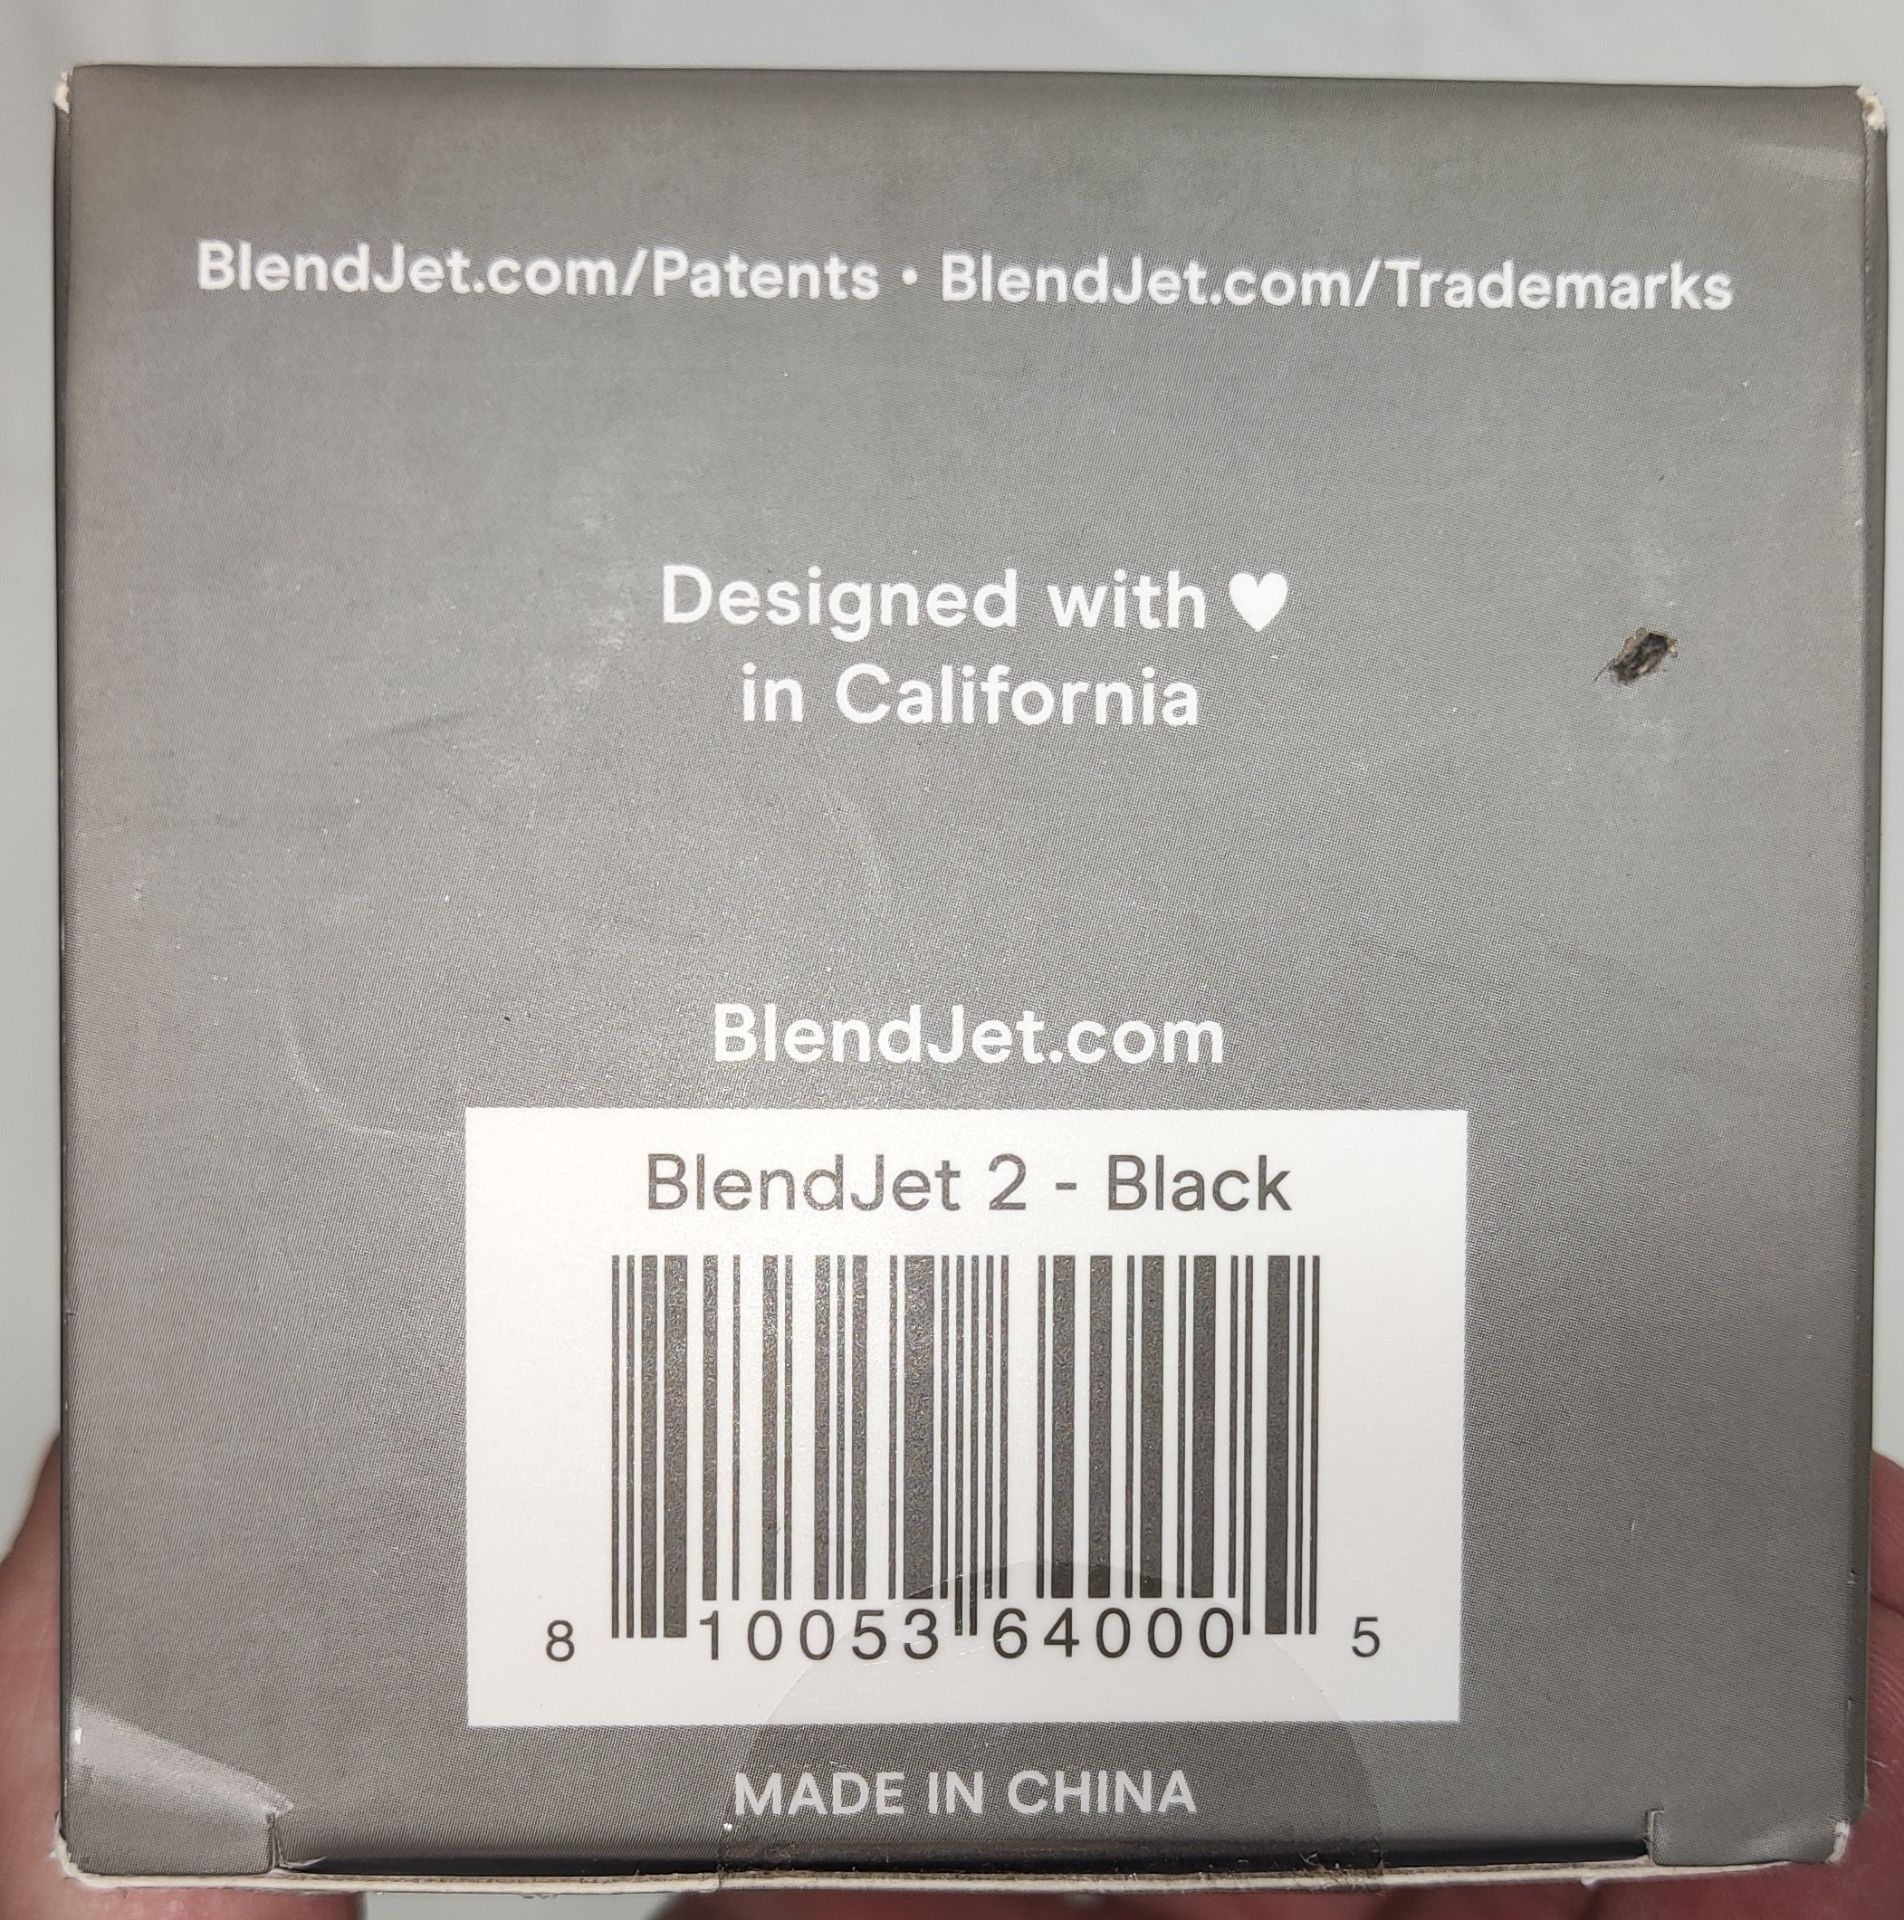 1 x BLENDJET Portable Blender (Blendjet 2) In Black - Original RRP £49.99 - Ref: 7097506/HJL376/ - Image 7 of 14